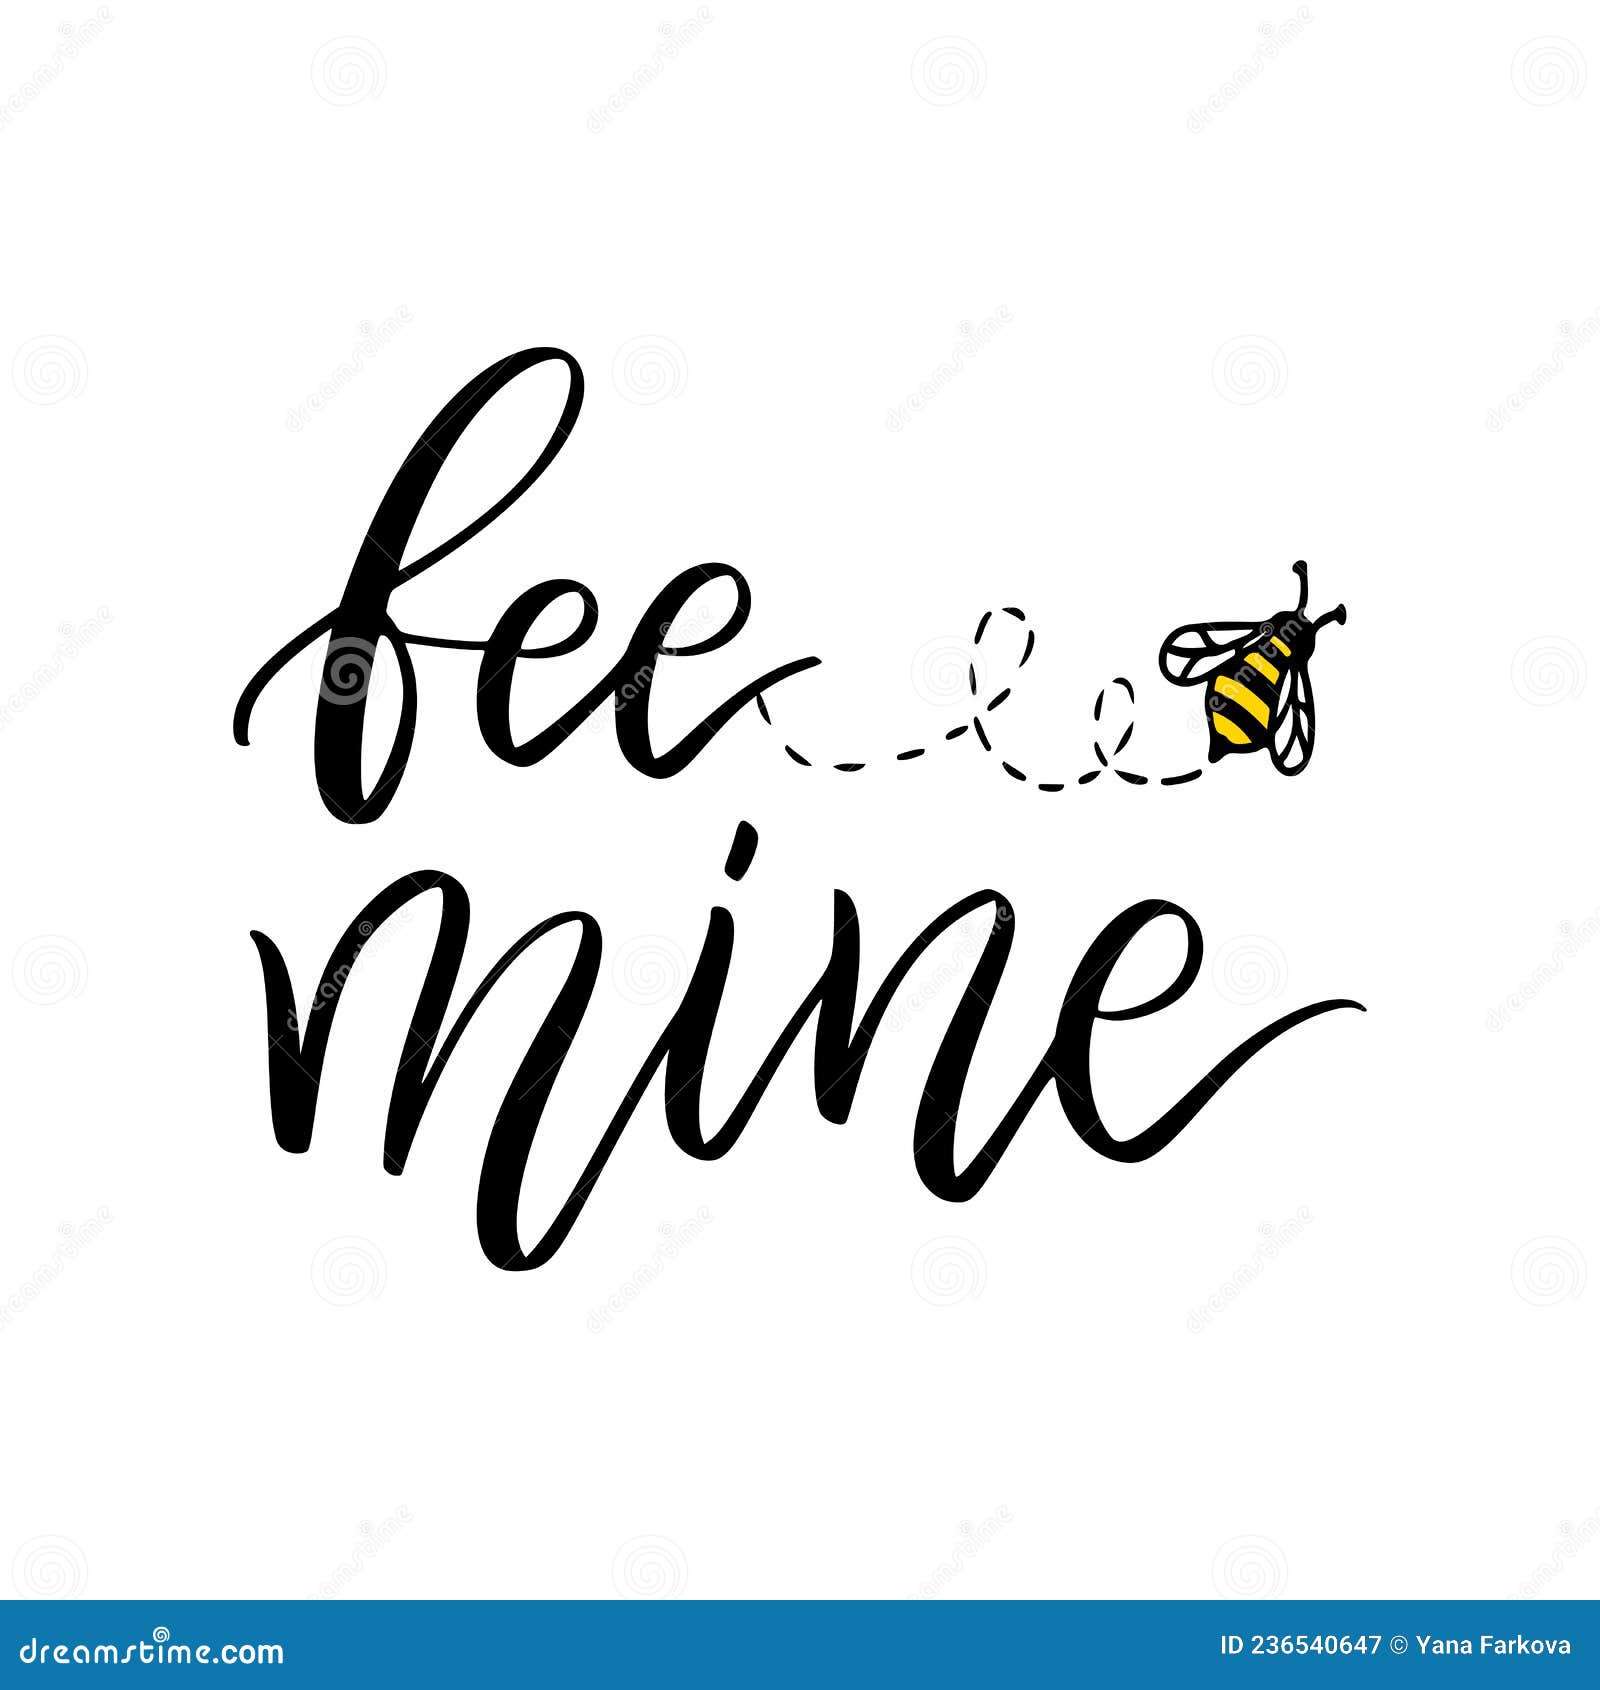 Bee Mine - một thông điệp tình yêu đầy ngọt ngào và đáng yêu. Hãy xem hình ảnh liên quan để cảm nhận sự yêu thương của cuộc sống.